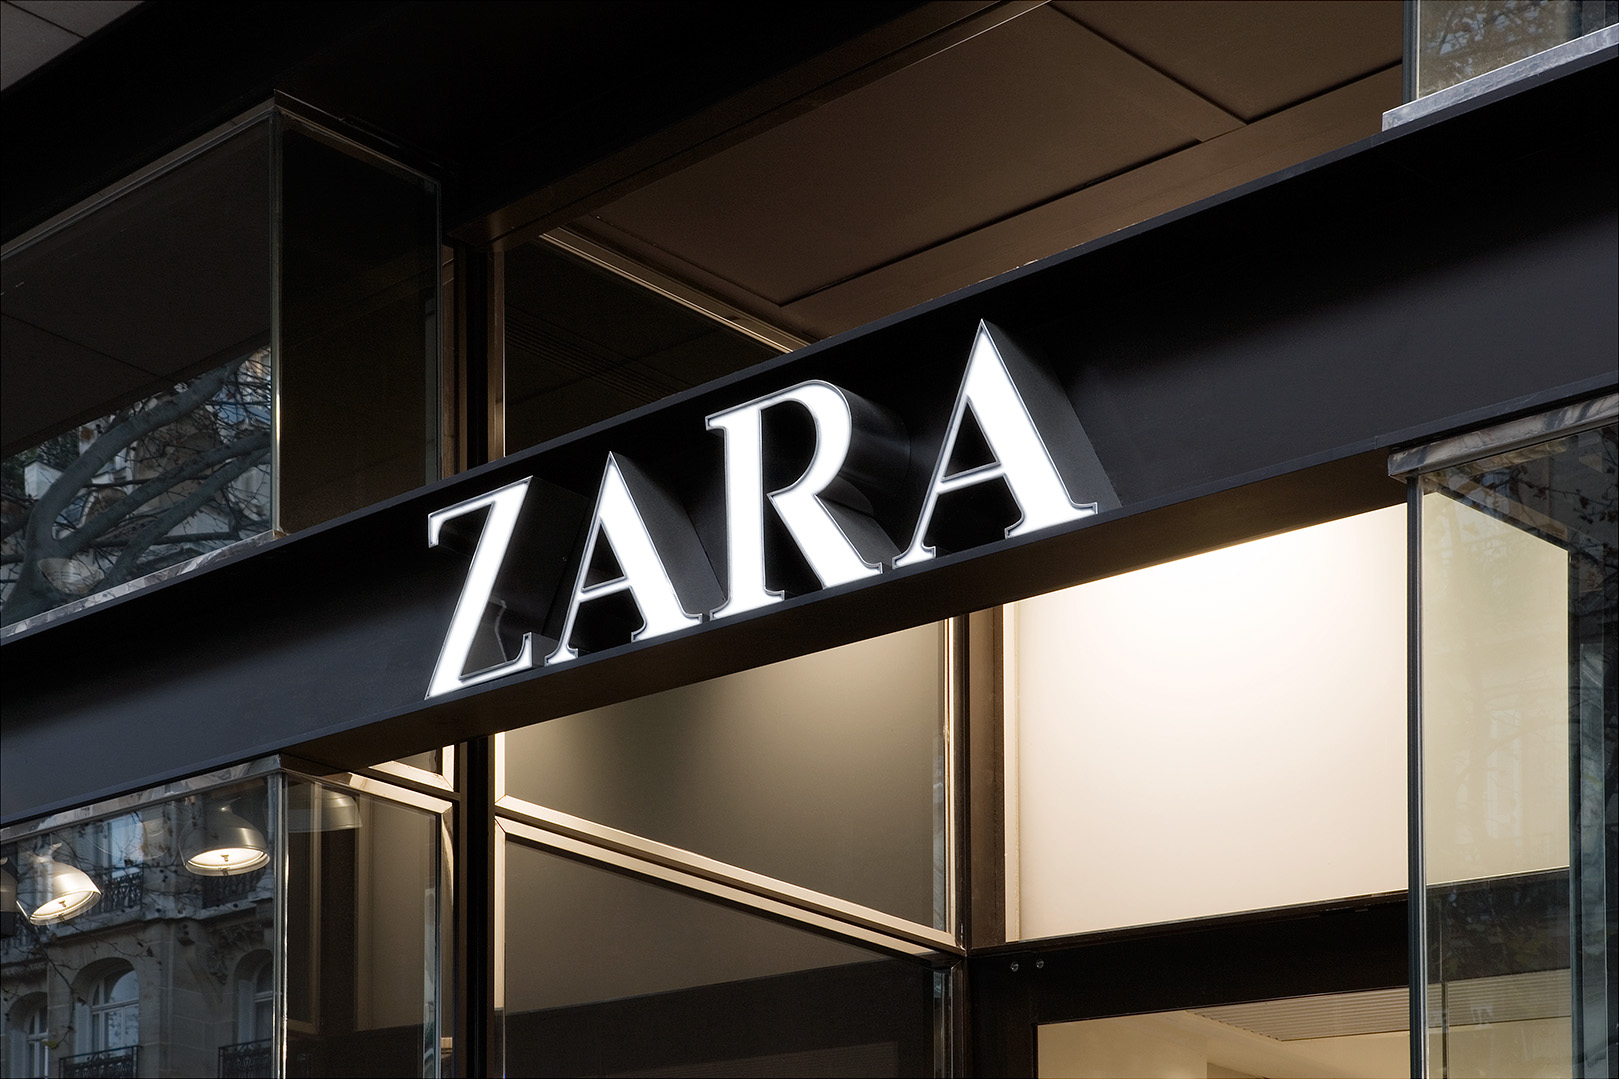 Zara Kids Интернет Магазин В Июне